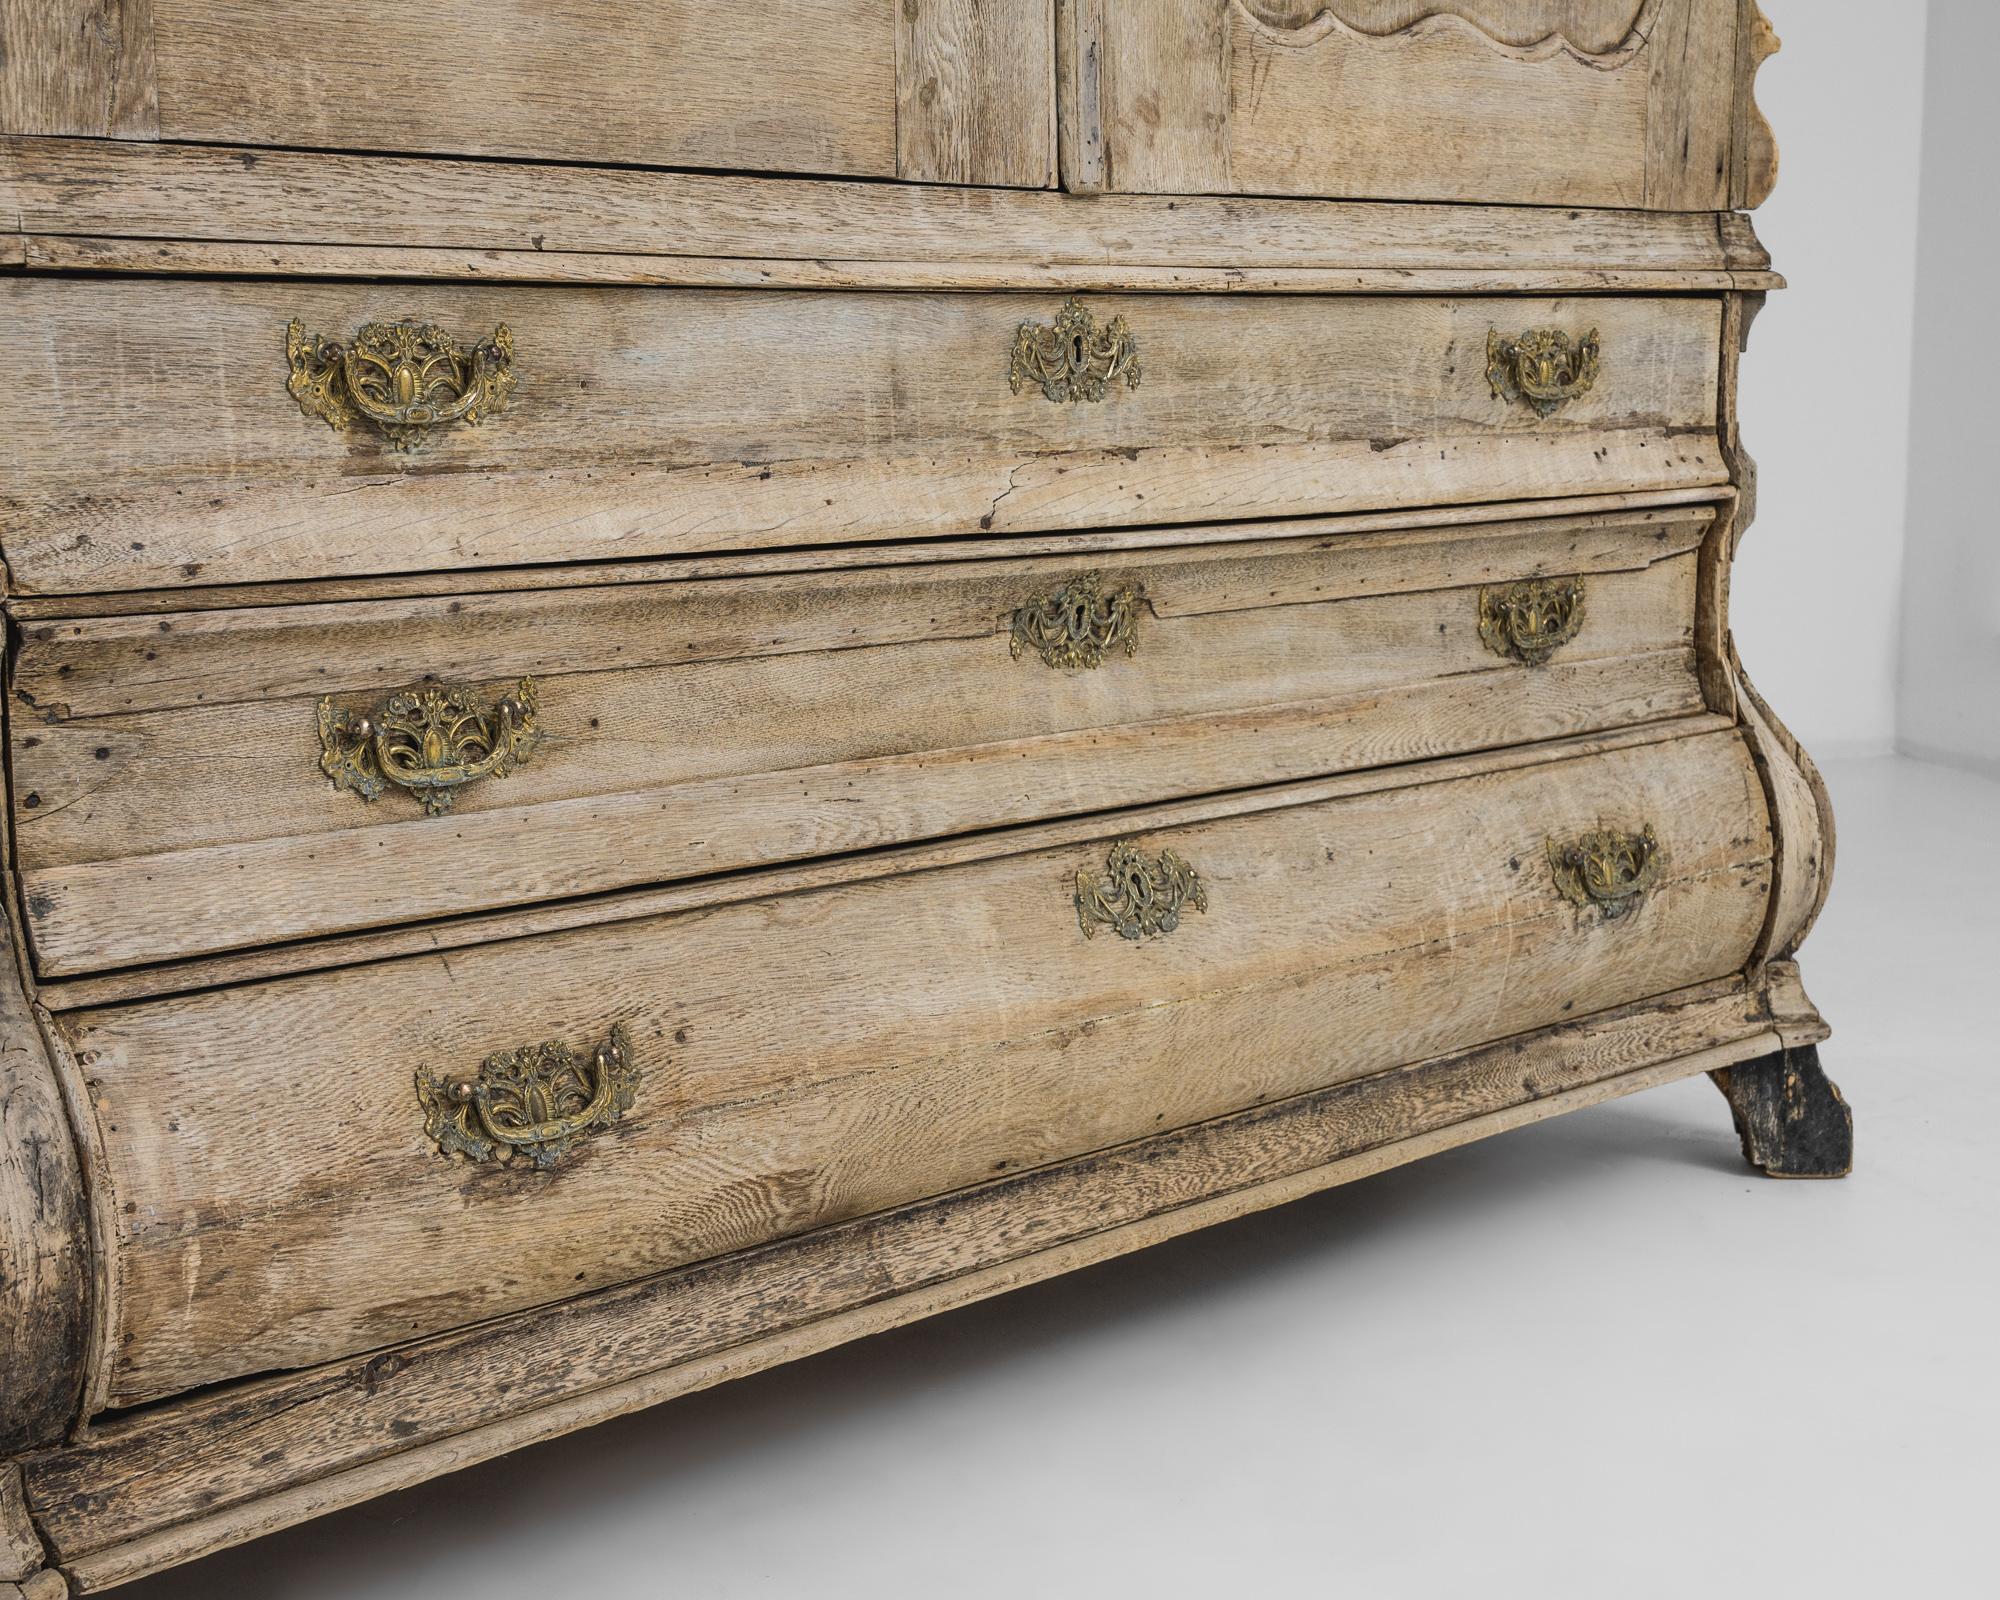 Créée aux Pays-Bas au XVIIIe siècle, cette armoire ancienne est une merveille intemporelle fabriquée en 1780. Riche du charme d'une époque révolue, cette armoire témoigne du savoir-faire des artisans néerlandais. Ornée de détails minutieux, cette